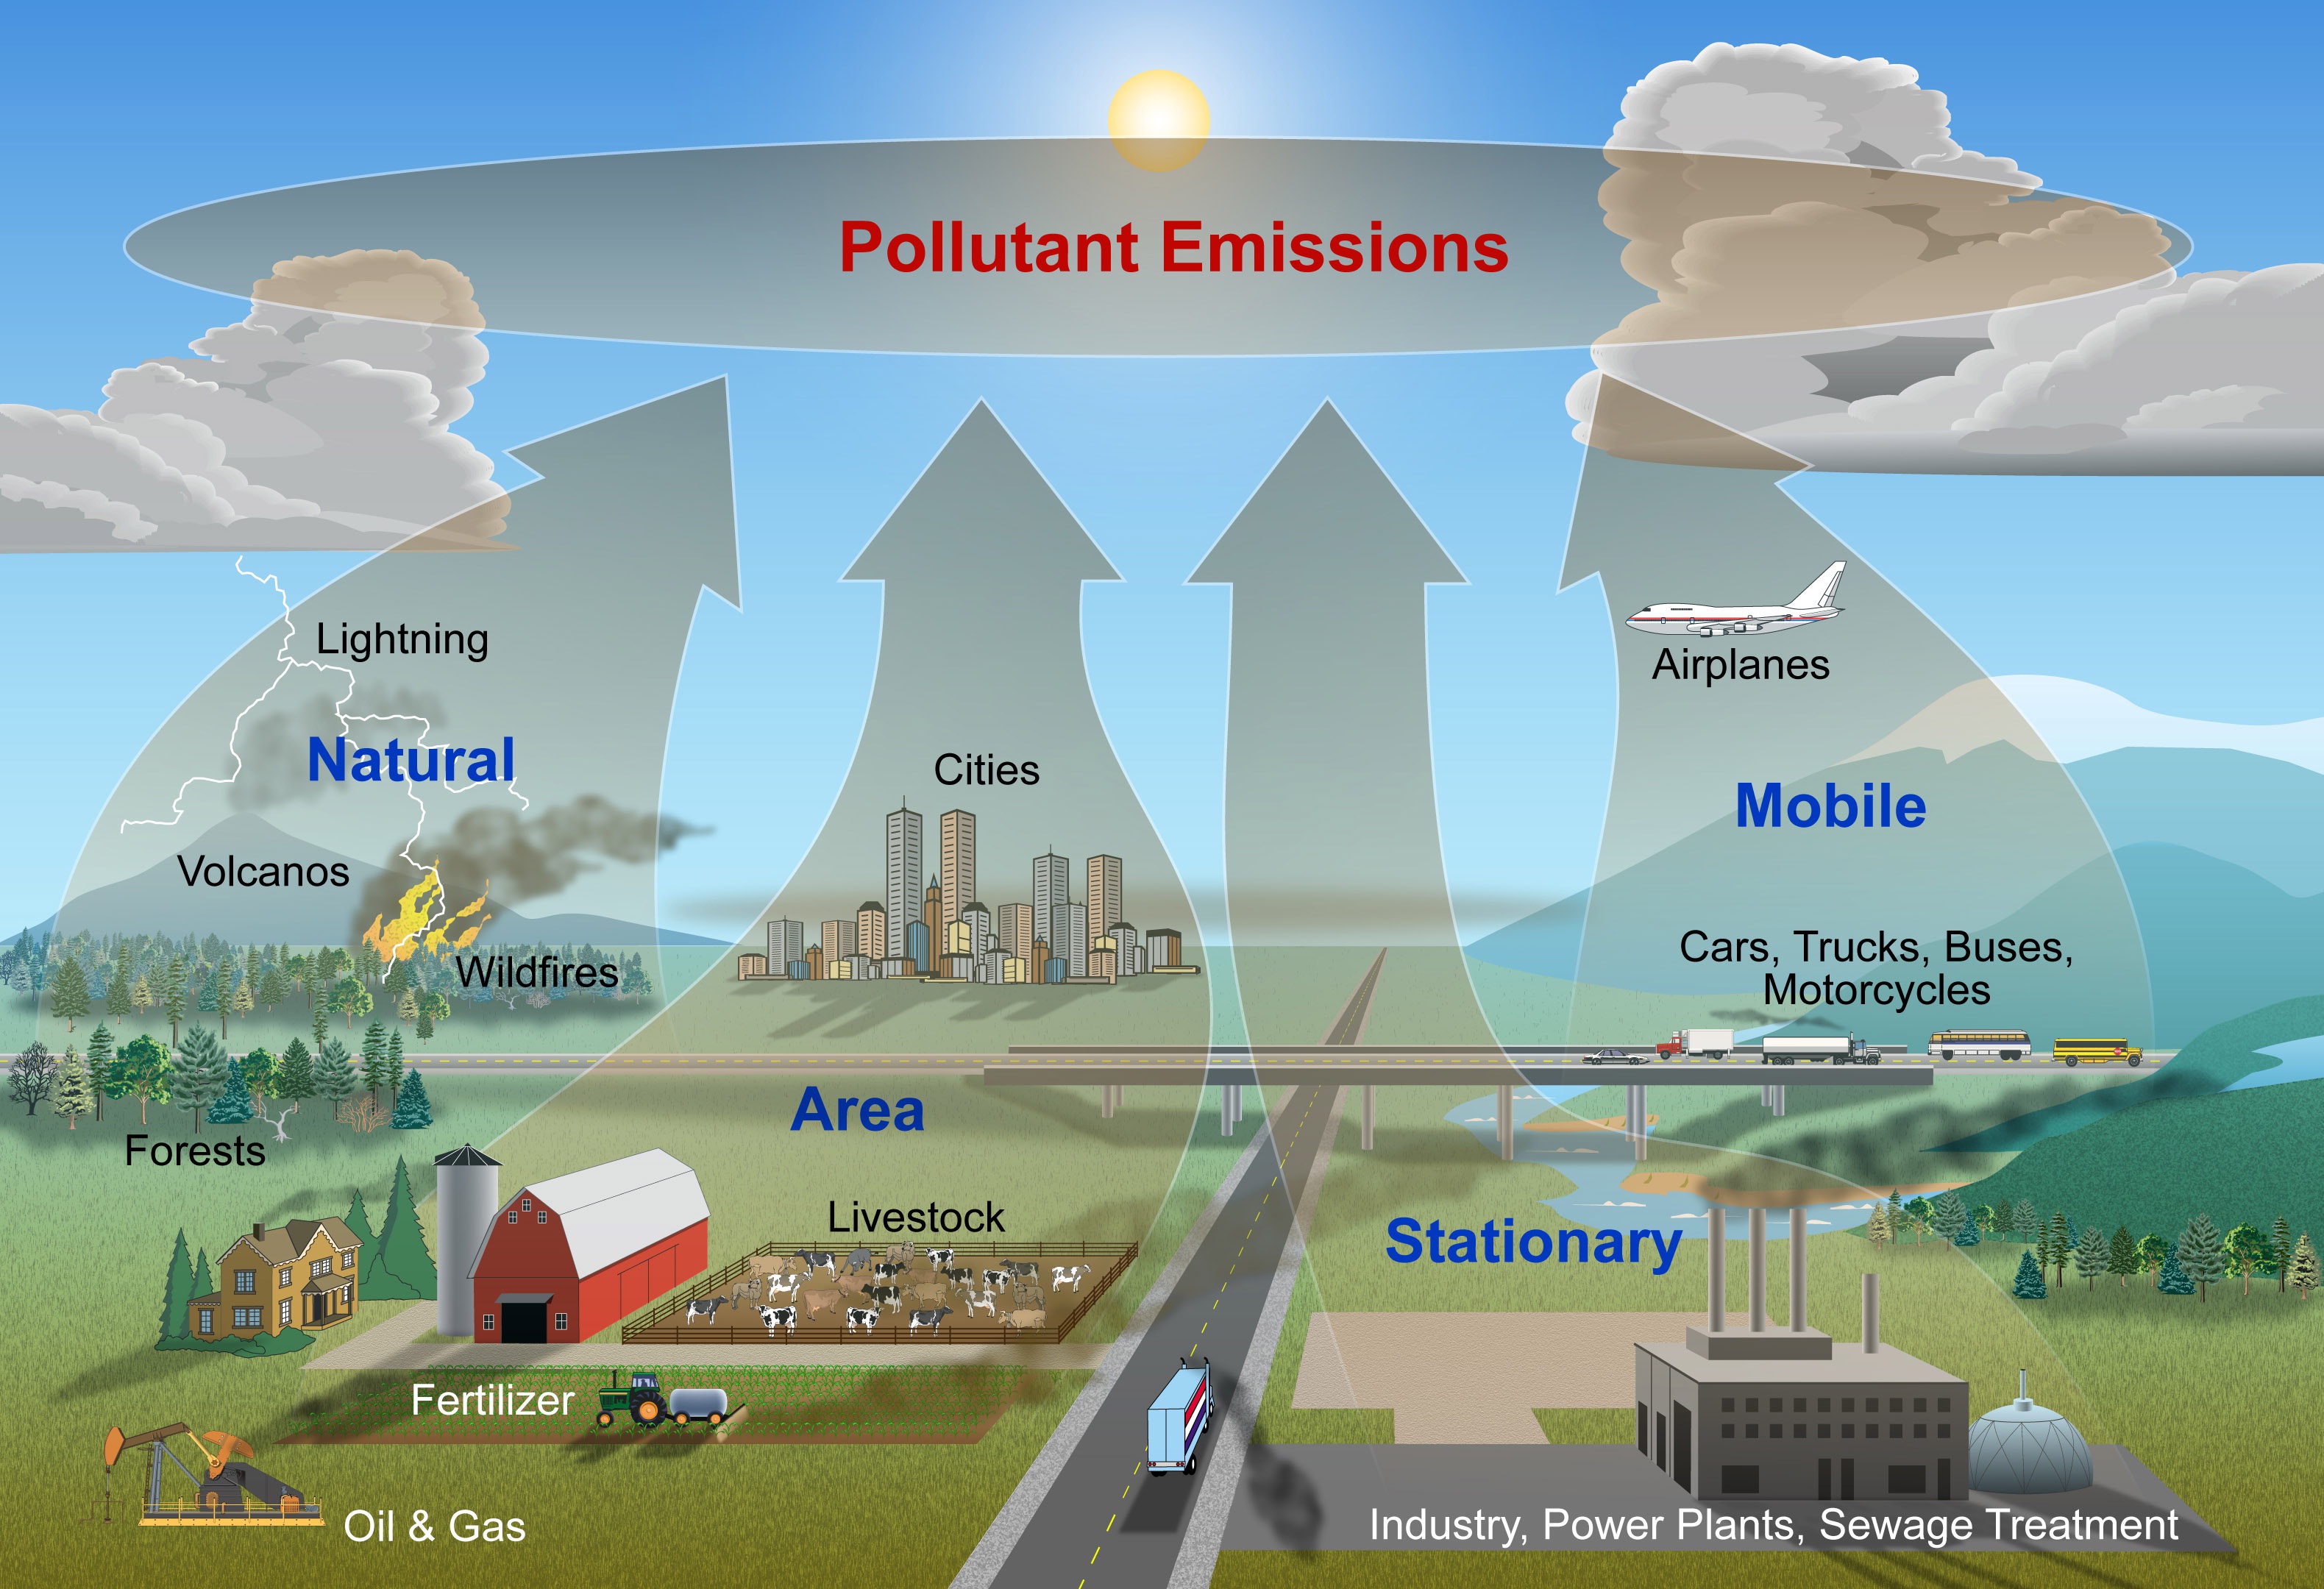 Reducing air pollution. Влияние хозяйственной деятельности. Загрязнение атмосферного воздуха. Влияние деятельности человека. Загрязнение атмосферы картинки.